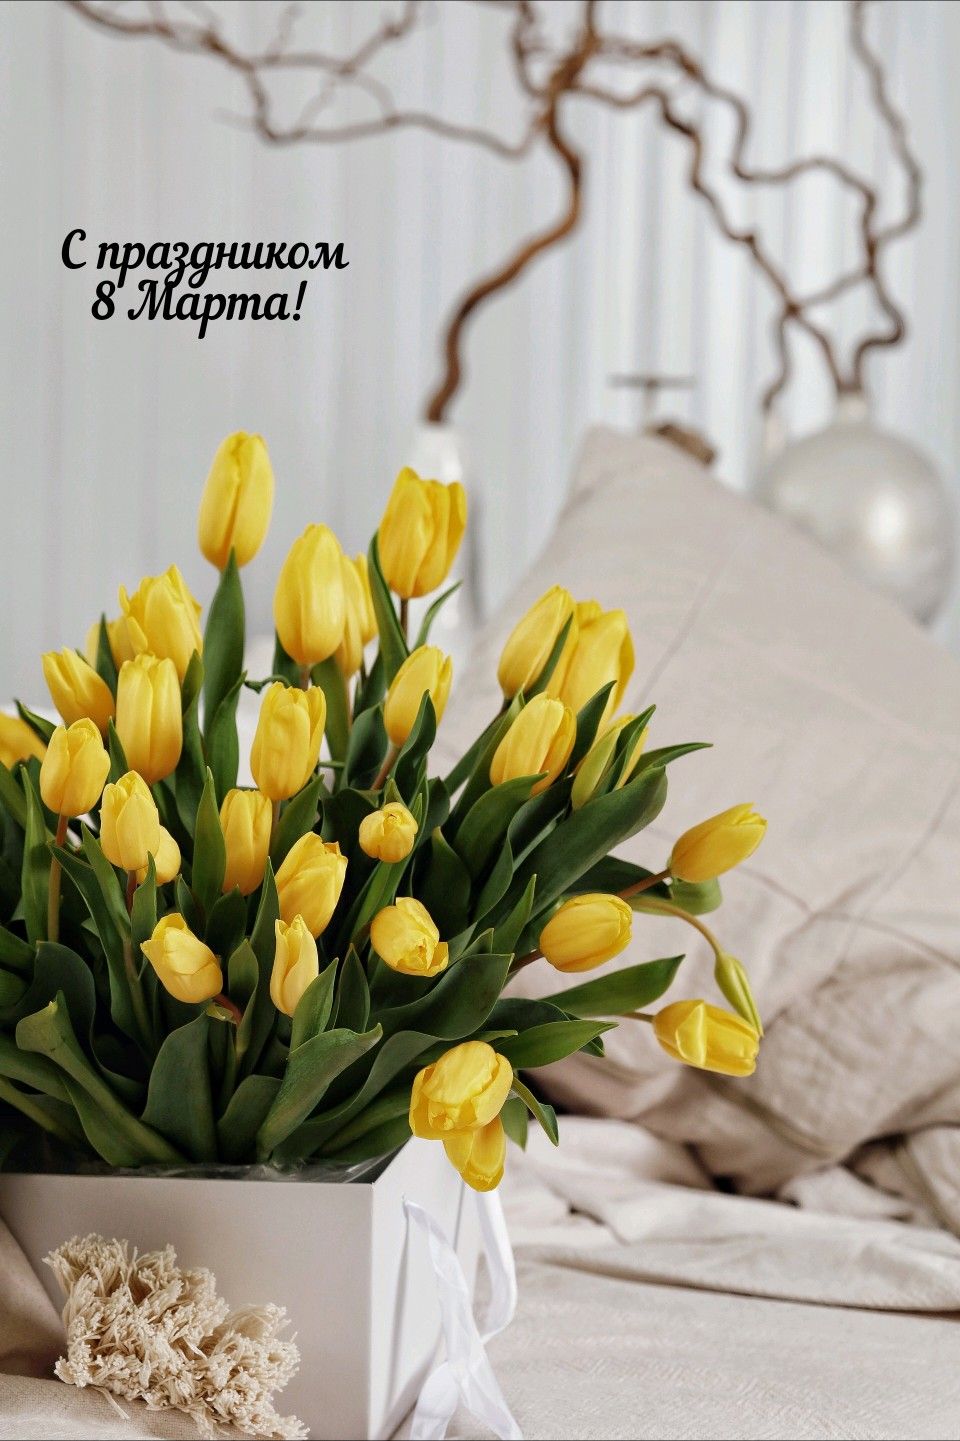 Красивые и нежные тюльпаны в открытках на 8 марта (5)